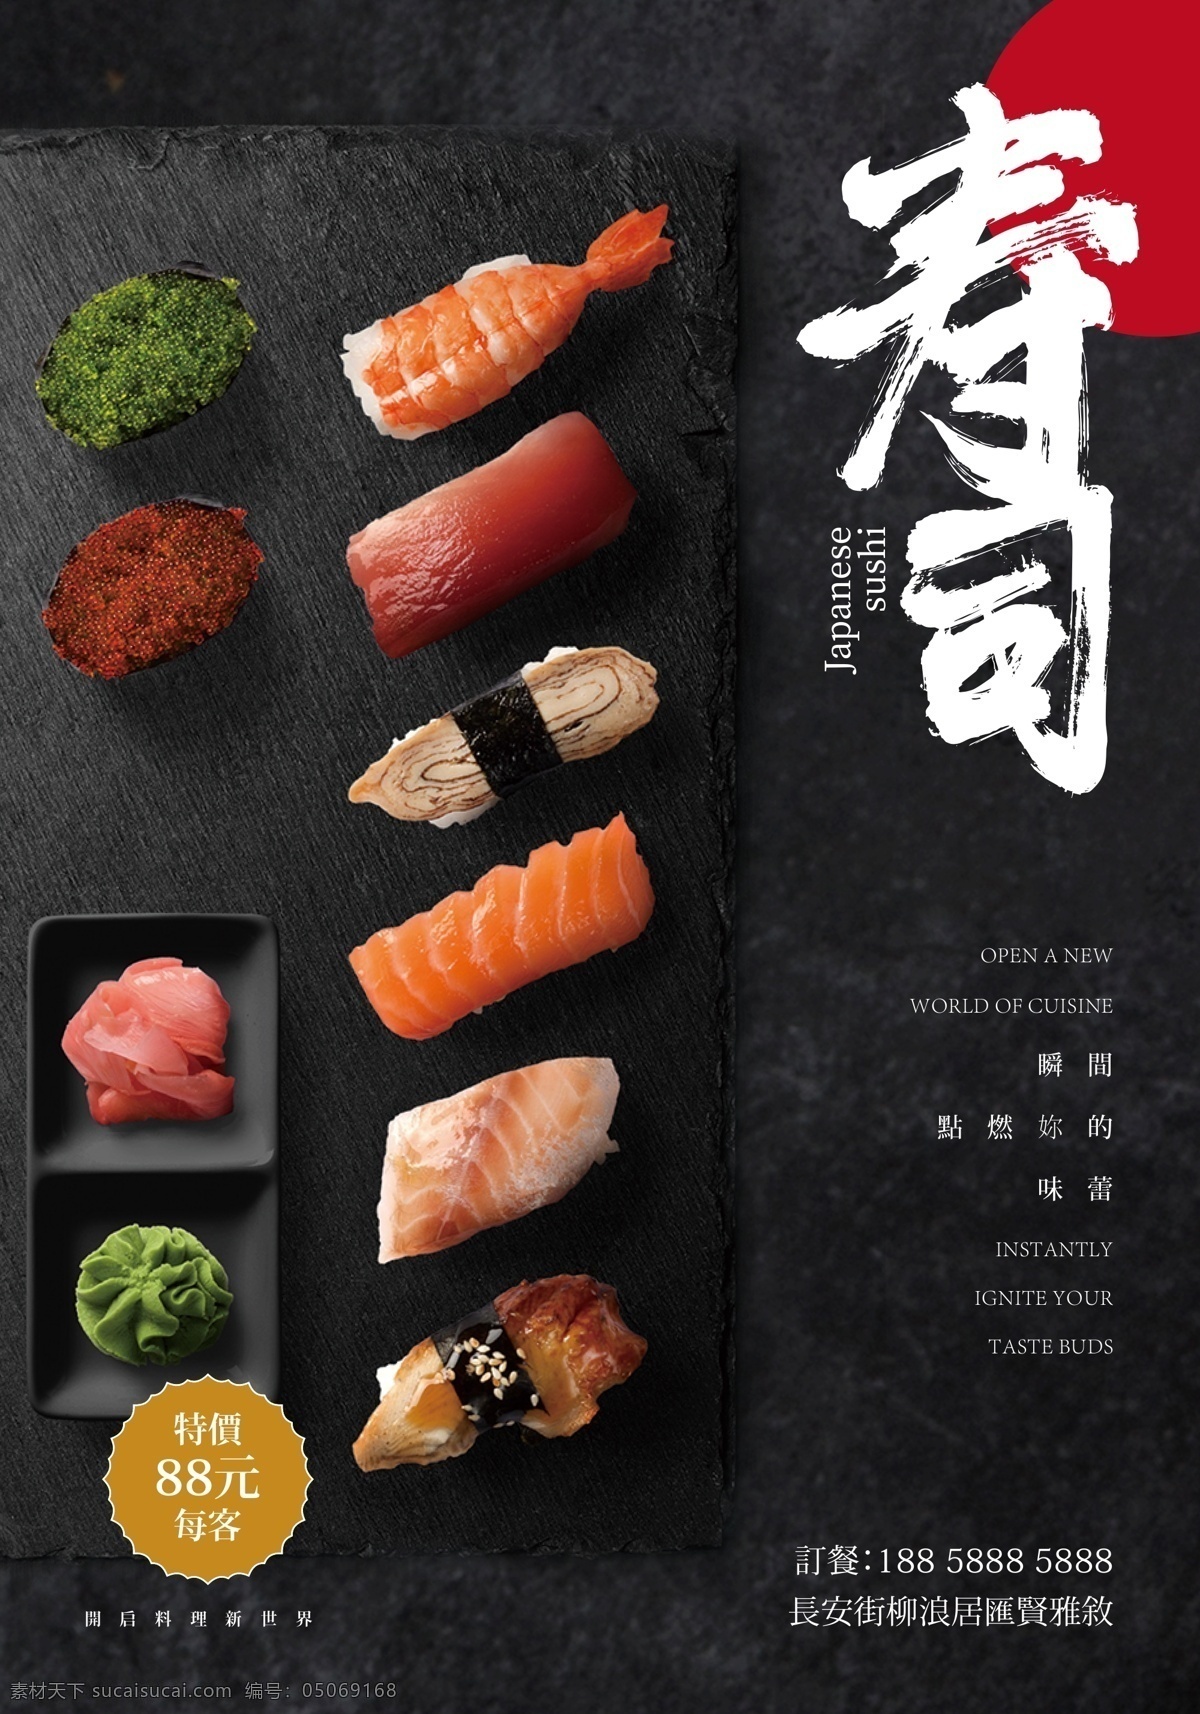 日式寿司套餐 寿司 手工 三文鱼 鳗鱼 甜虾 鱼子酱 套餐 黑色 手作 美食 餐饮美食 招贴设计